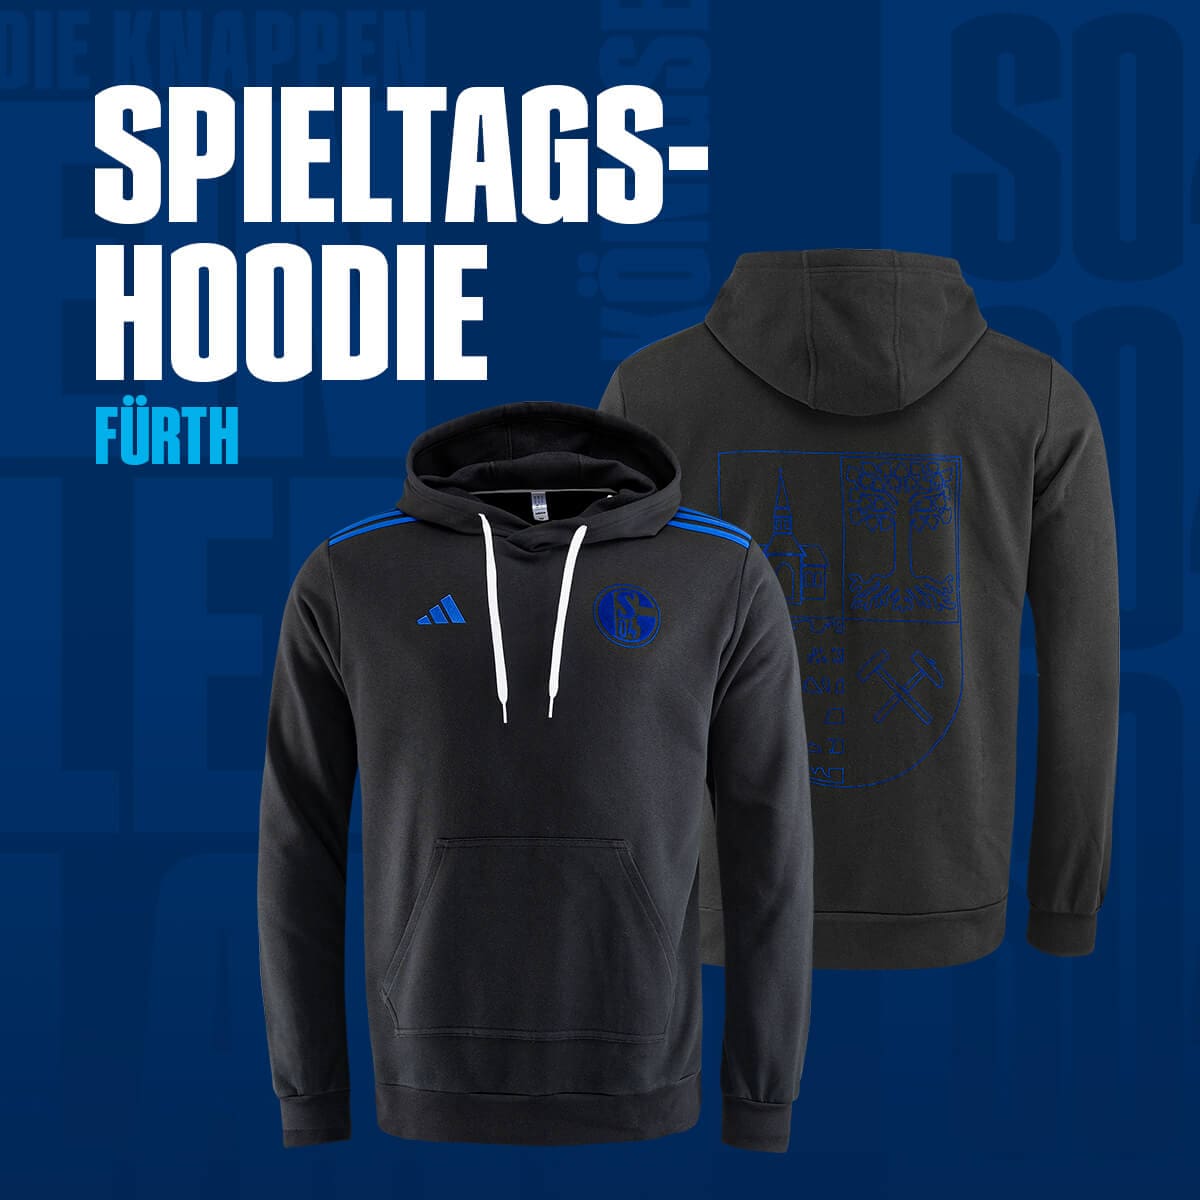 Spieltagshoodie adidas FC Schalke 04